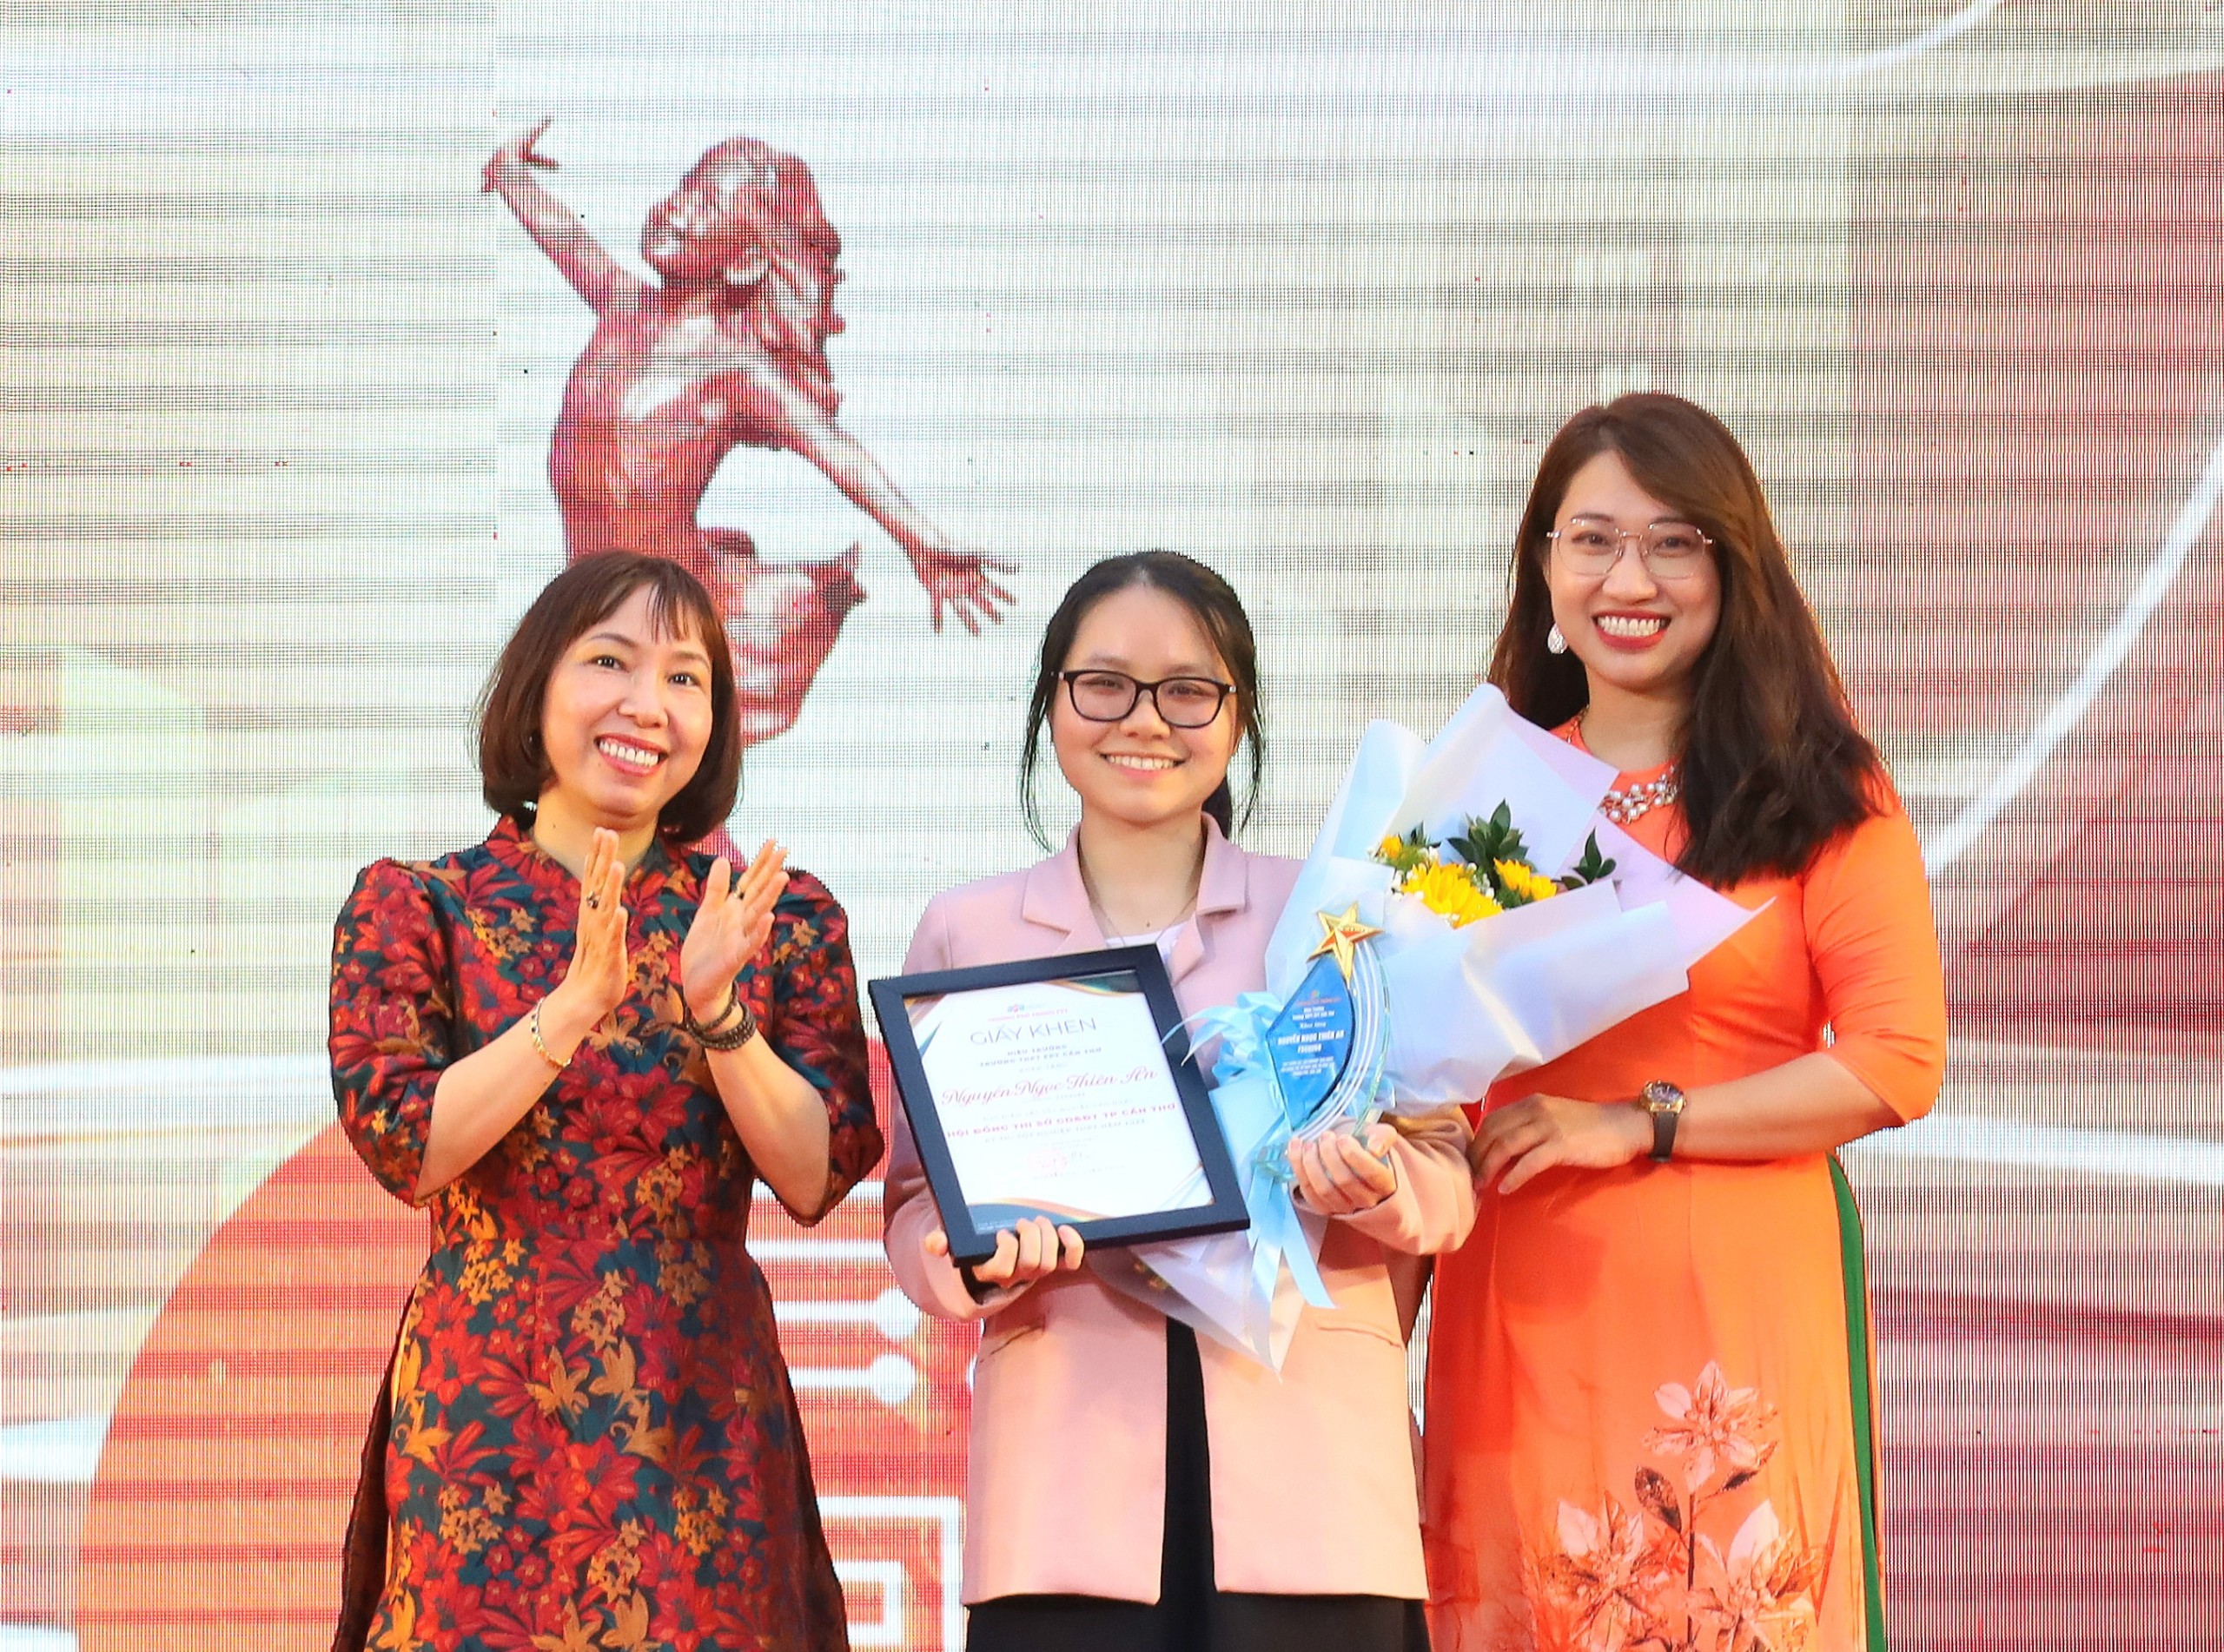 Trao khen thưởng cho em Nguyễn Ngọc Thiên An - thí sinh đạt điểm xét tốt nghiệp THPT năm 2023 cao nhất của Hội đồng thi Sở Giáo dục và Đào tạo TP. Cần Thơ, với 10,37 điểm.